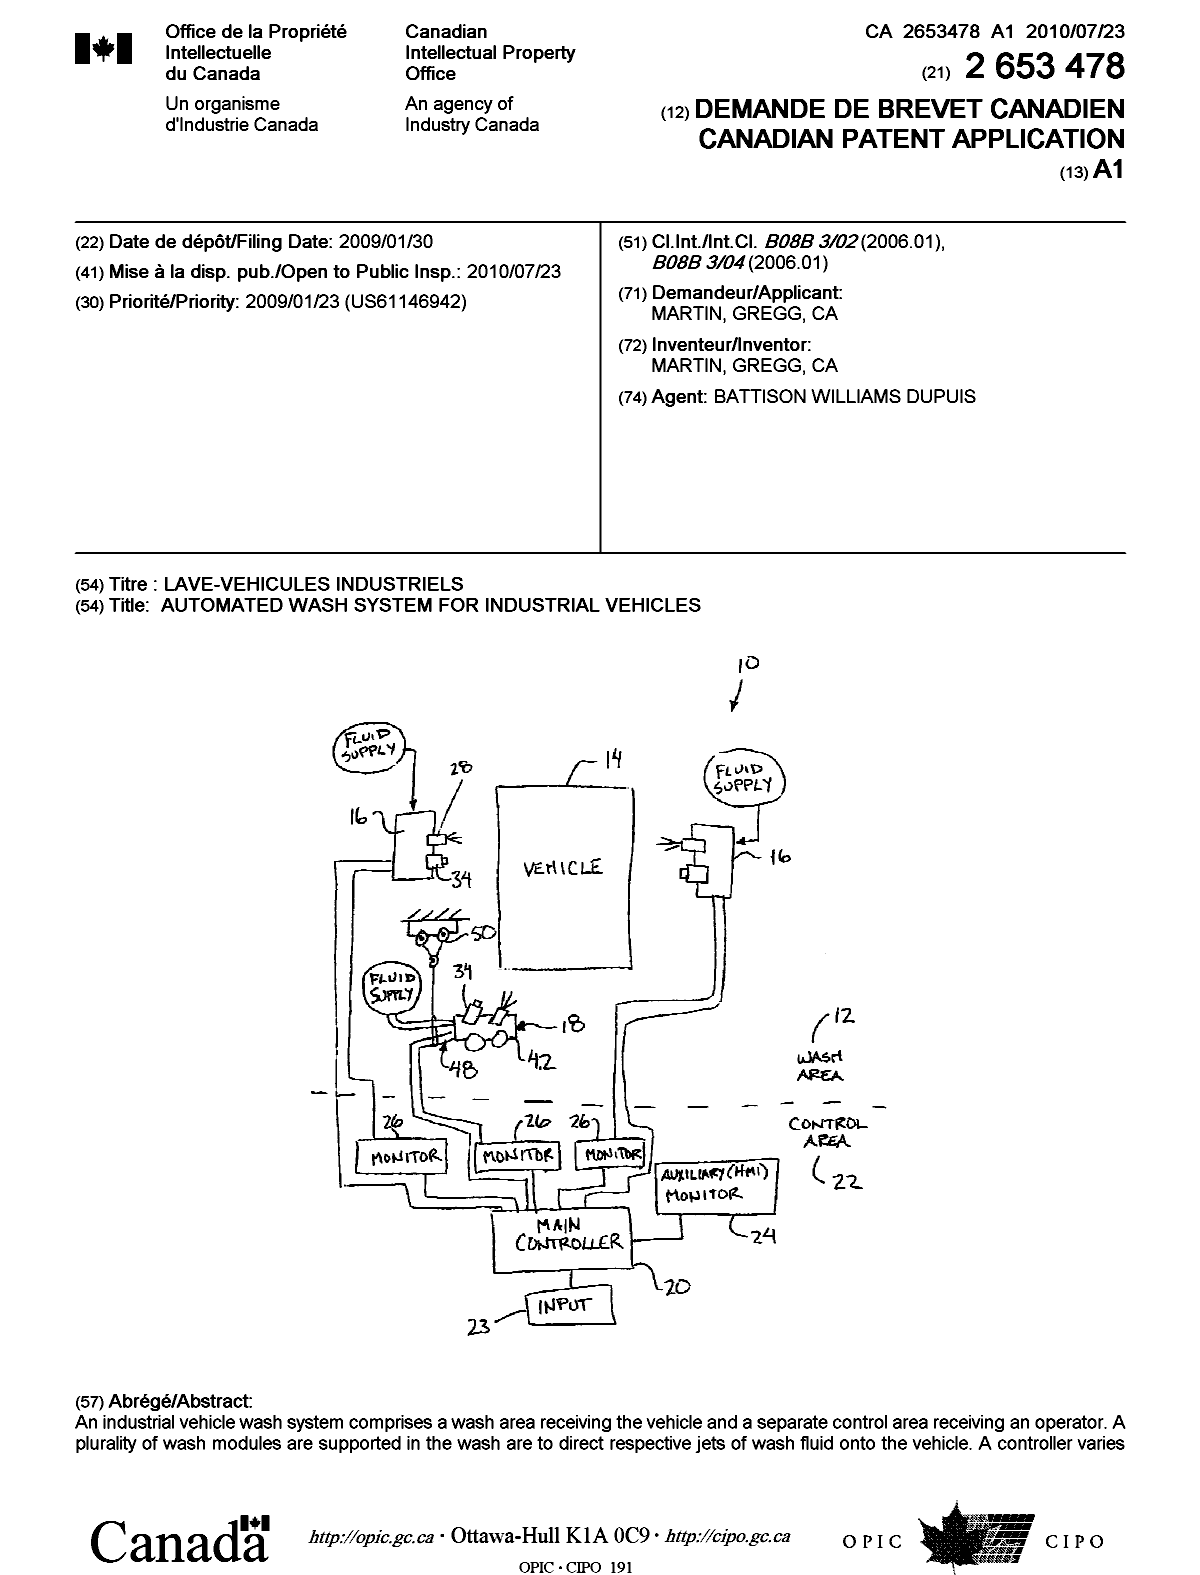 Document de brevet canadien 2653478. Page couverture 20100714. Image 1 de 2